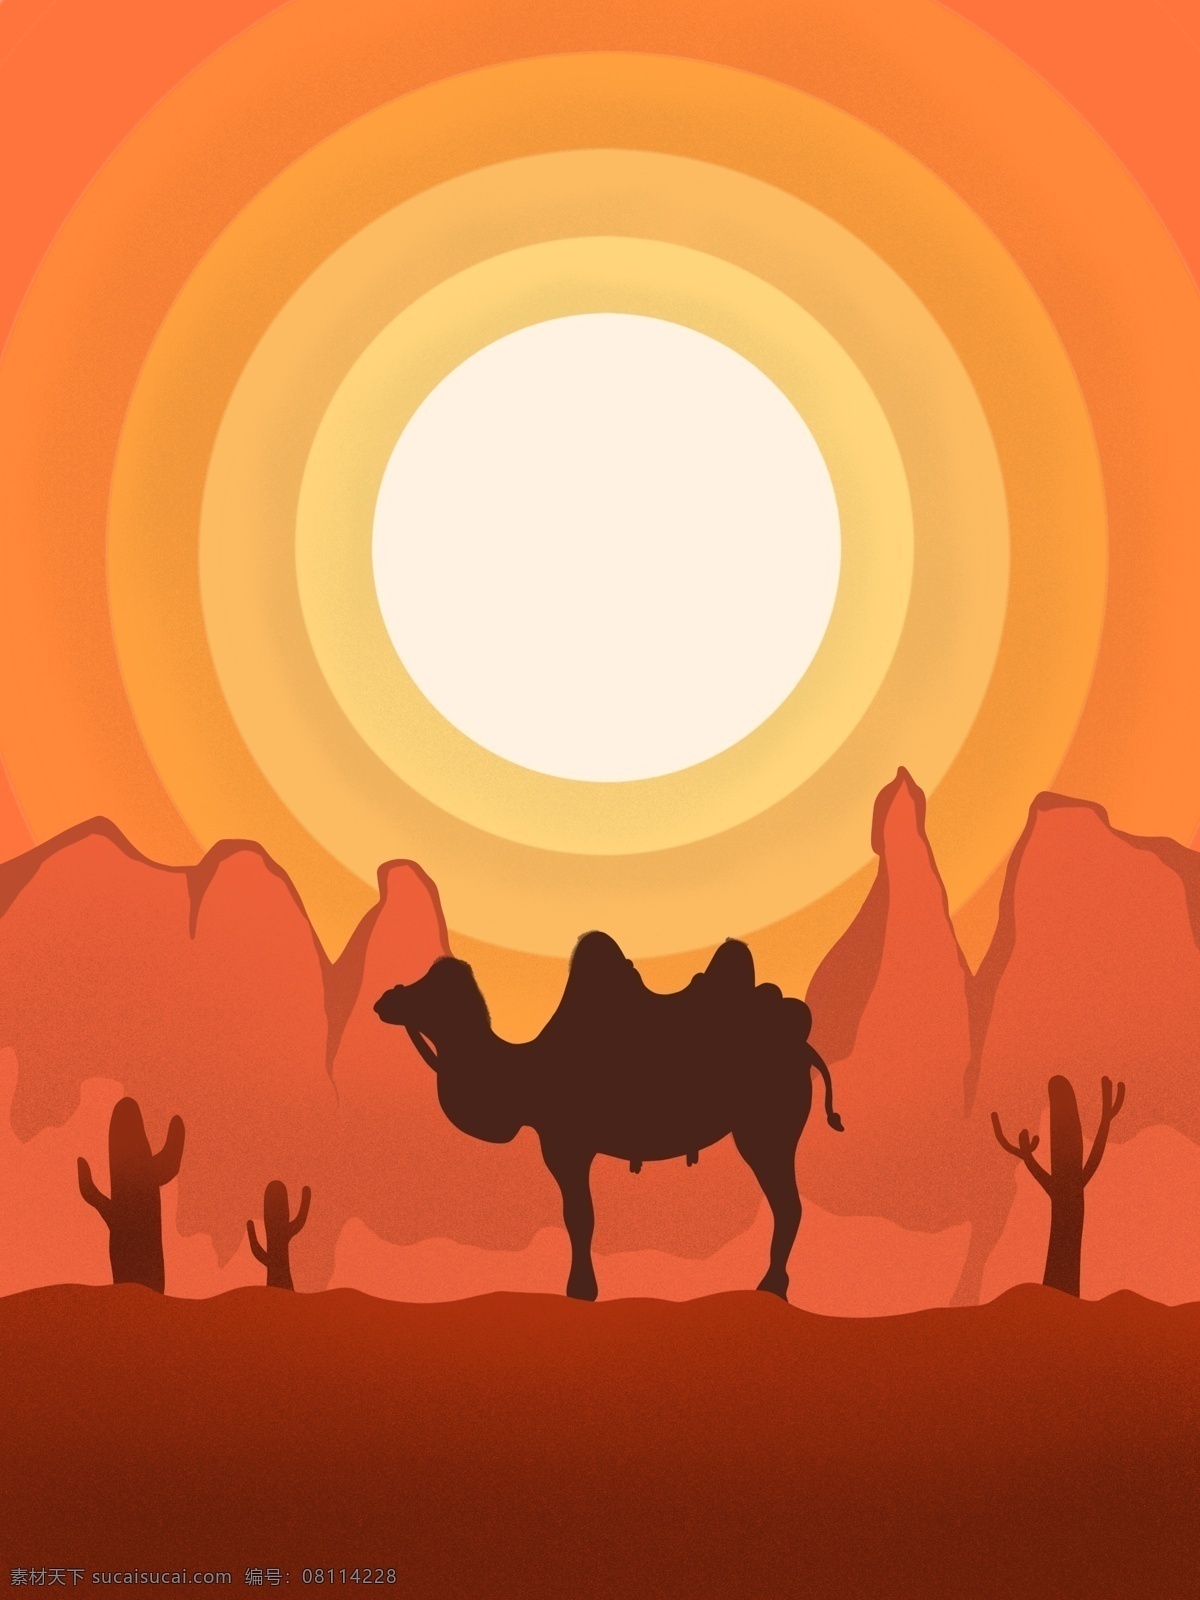 沙漠 骆驼 手绘 插画 沙漠骆驼 骆驼剪影 沙漠层叠 沙堆 沙丘 层次沙丘 落日余晖 落日 丝绸之路 企业文化背景 沙漠背景 沙漠场景 沙漠插画 ps插画 动漫动画